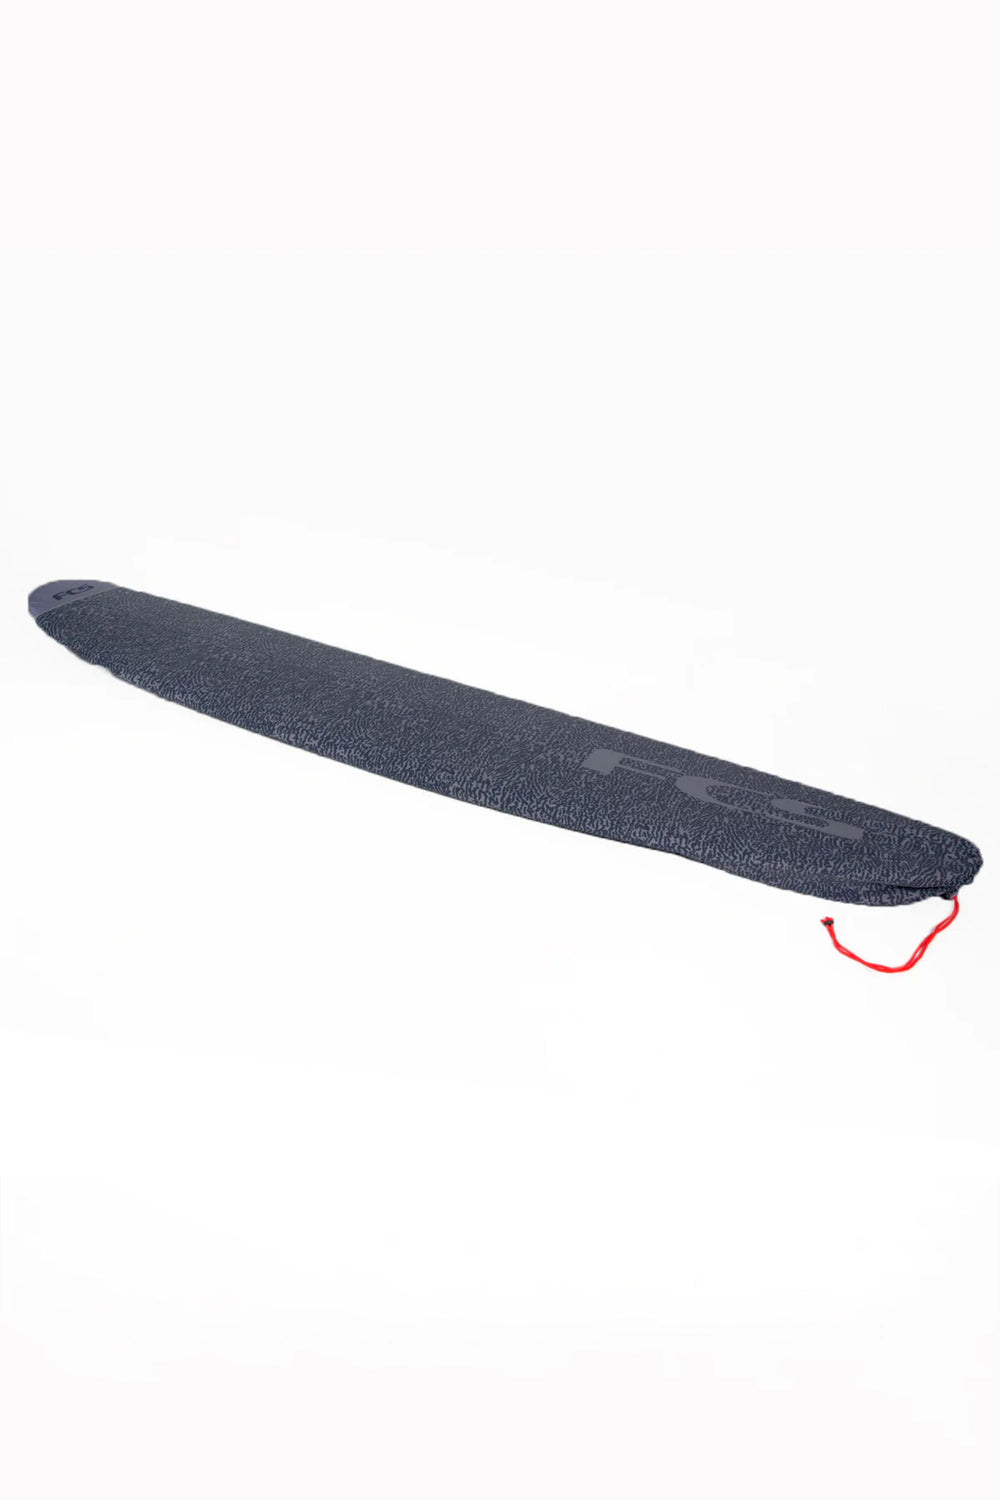 Pukas-Surf-Shop-fcs-Stretch-Long-Board-9.0-carbon